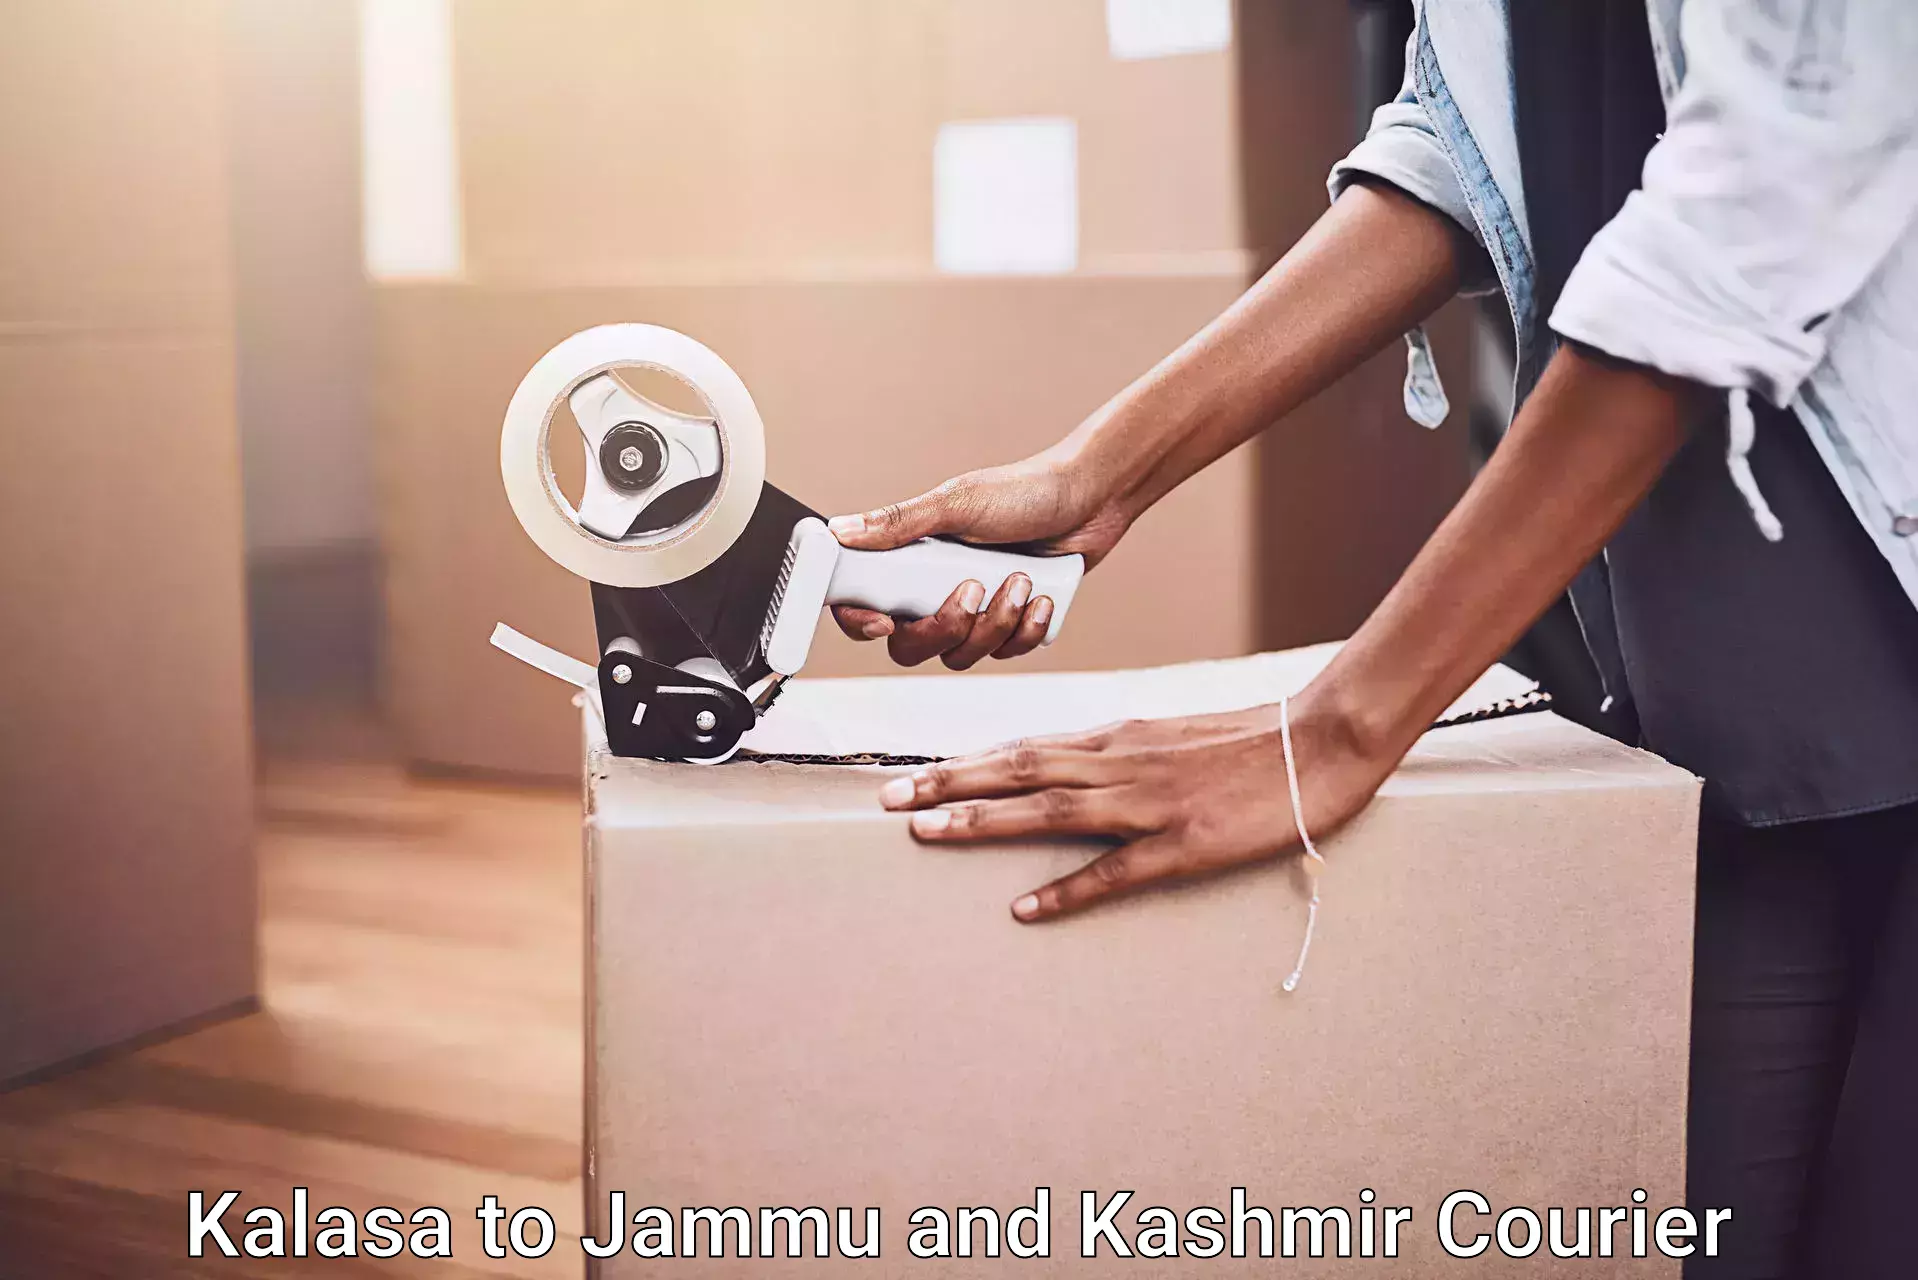 Efficient moving company Kalasa to Jammu and Kashmir